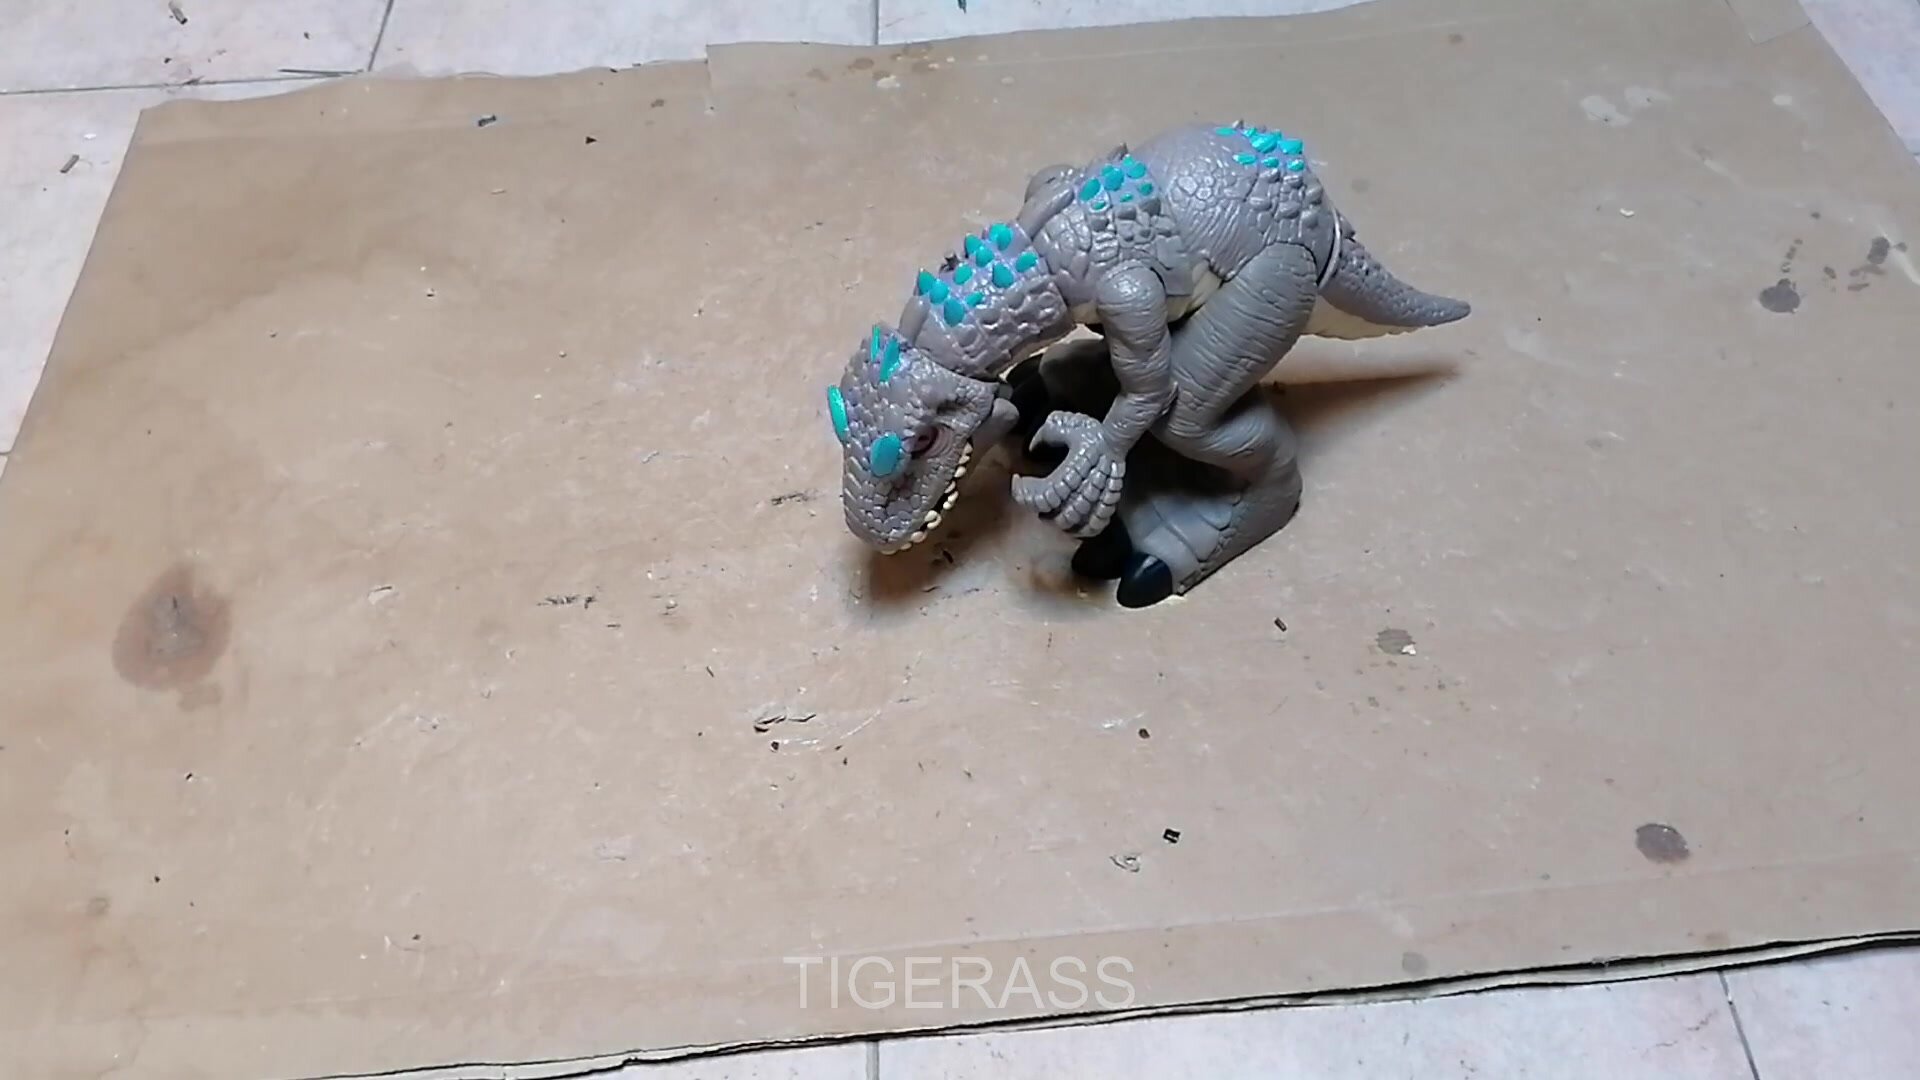 4 - Destroy a big dinosaur